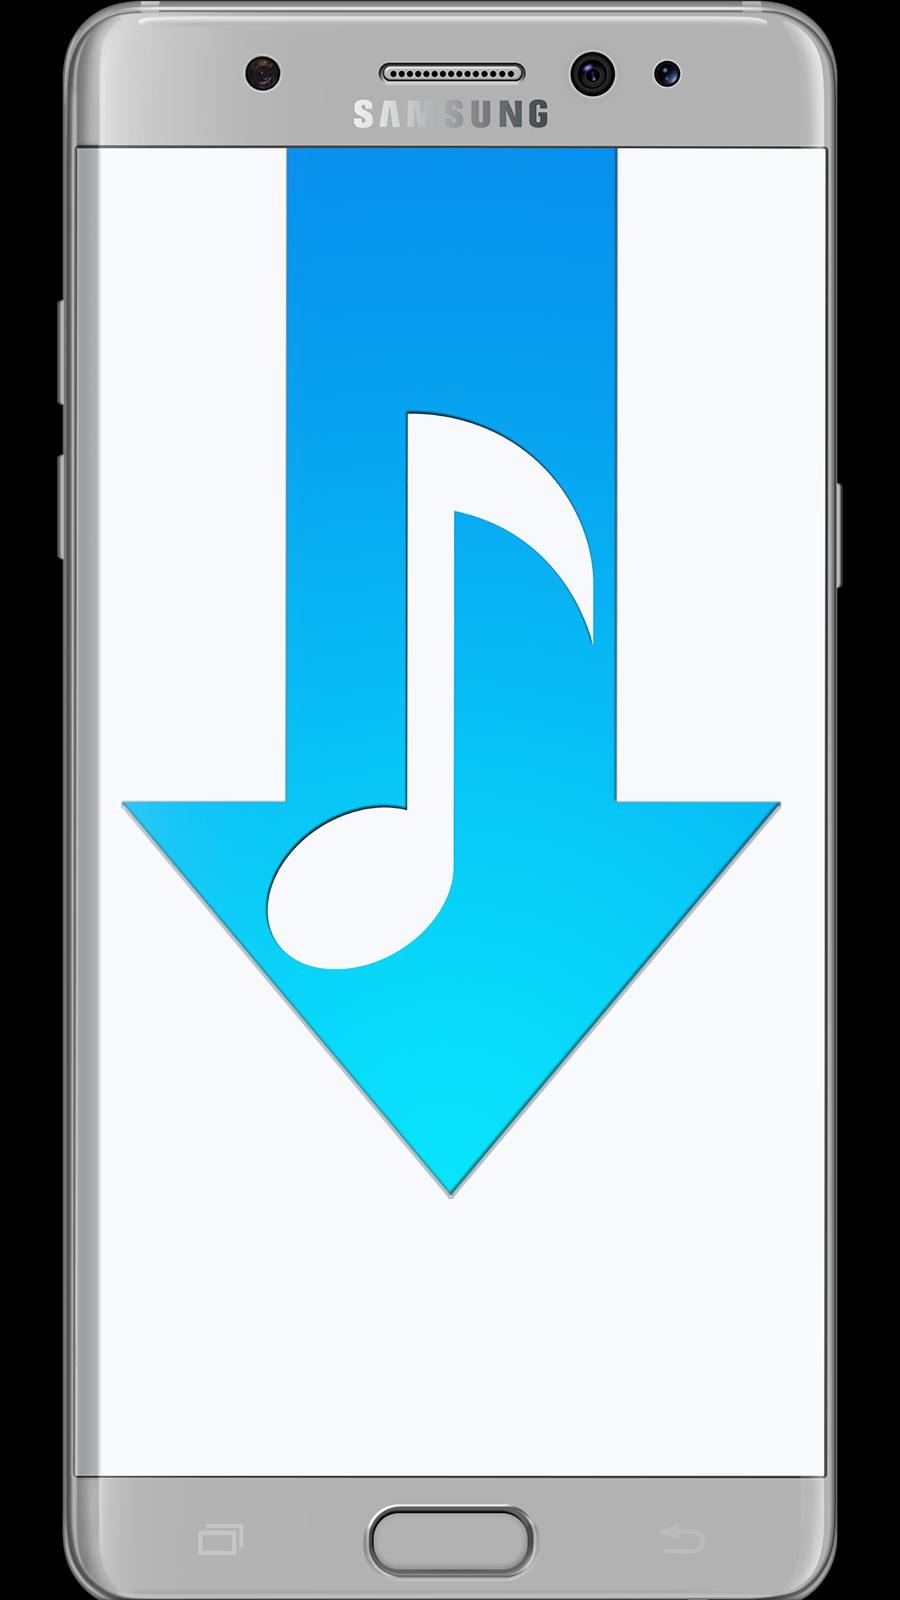 Bedava Müzik İndir | Klip MP3 İndir für Android - APK herunterladen